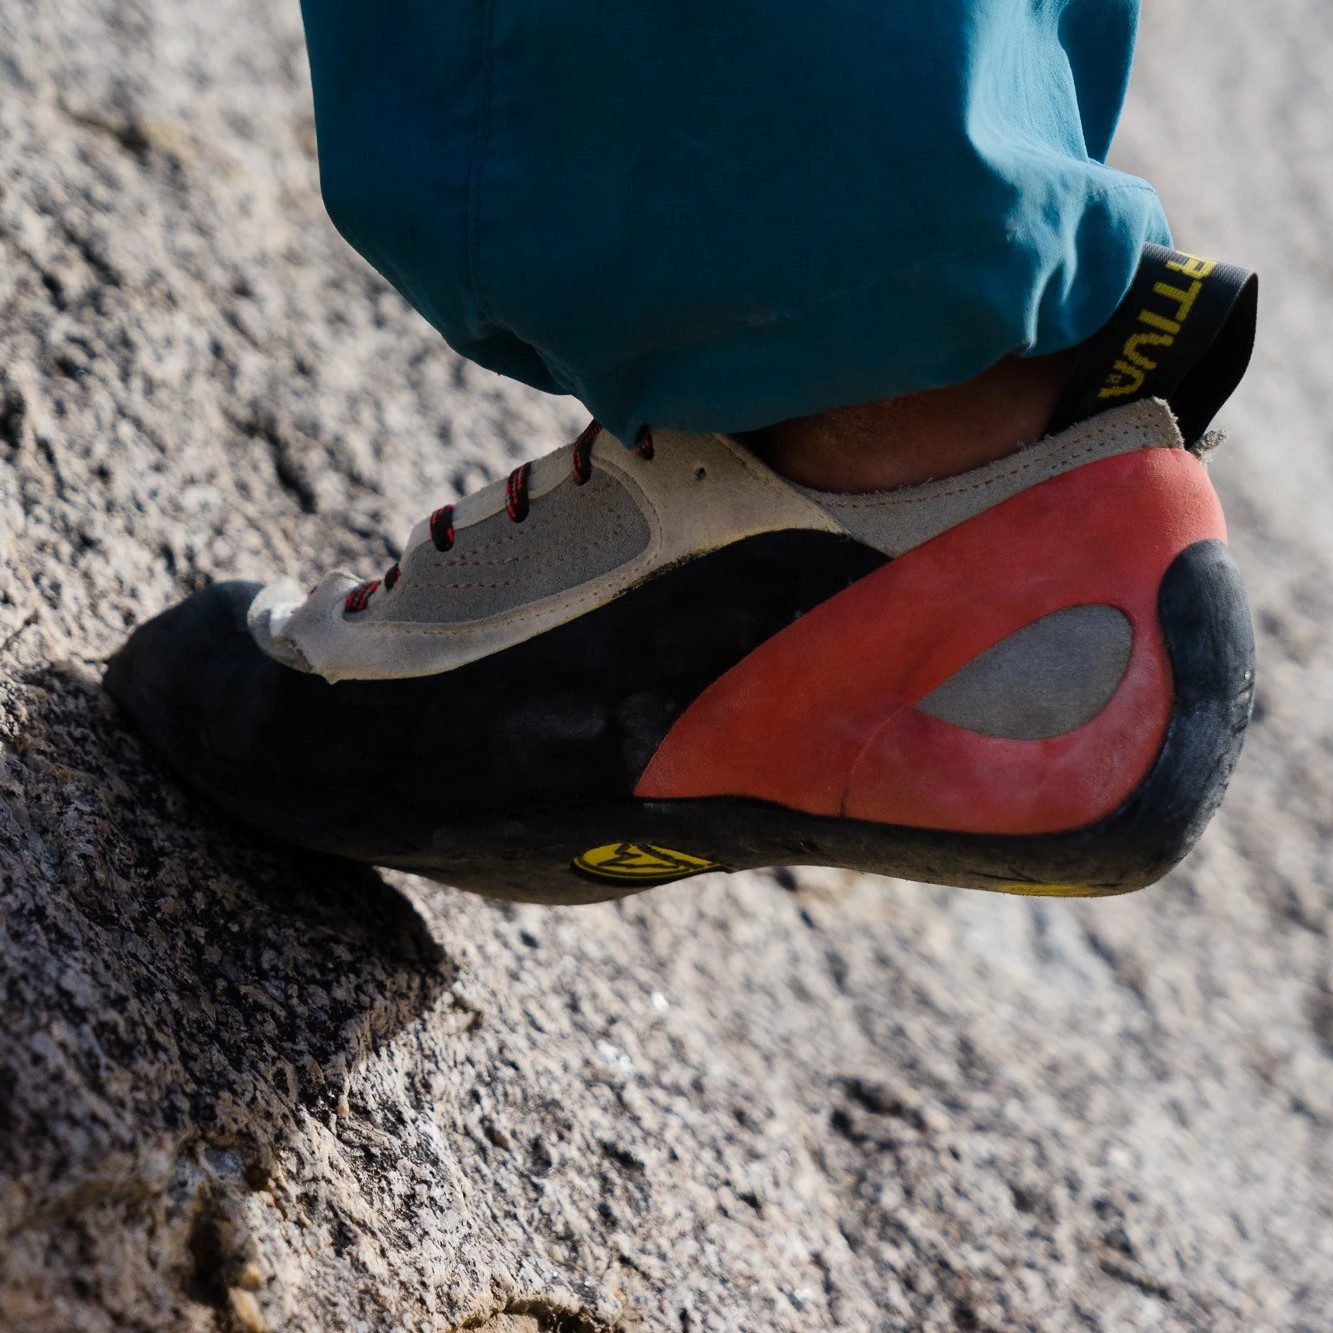 La Sportiva Finale Women's Rock Climbing Shoe